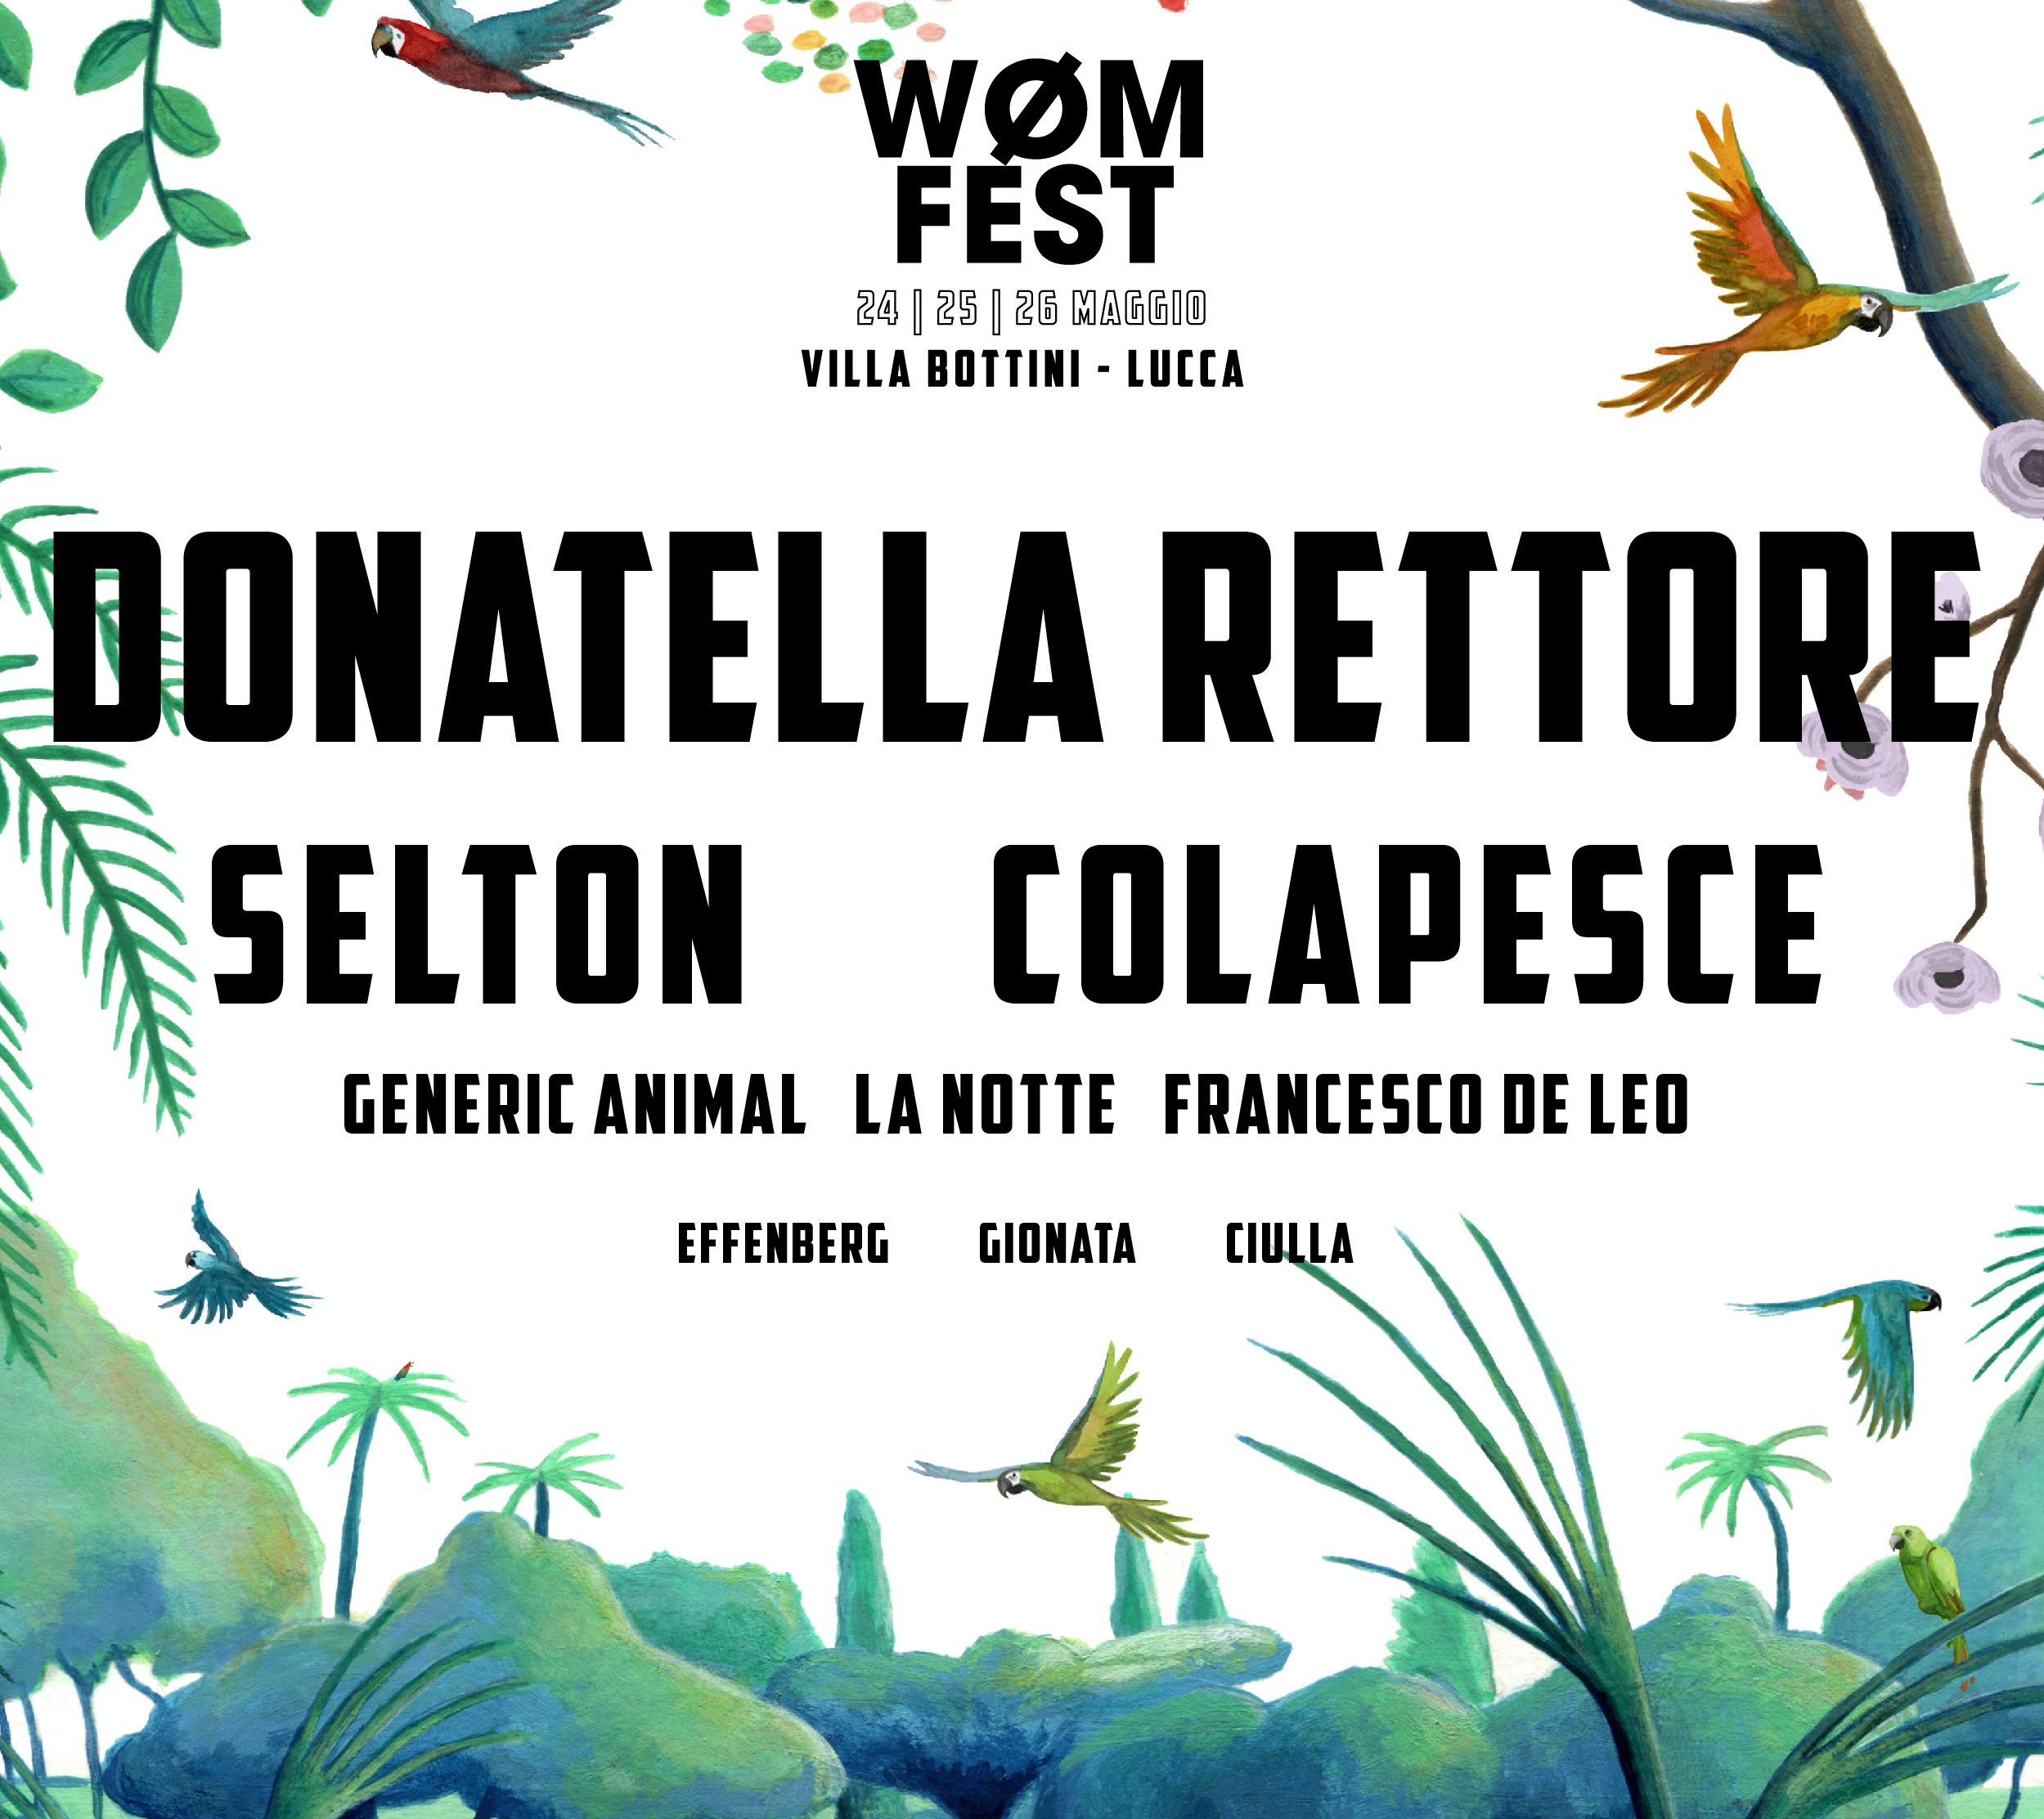 Seconda edizione  del WØM FEST  a Lucca dal 24 al 26 maggio